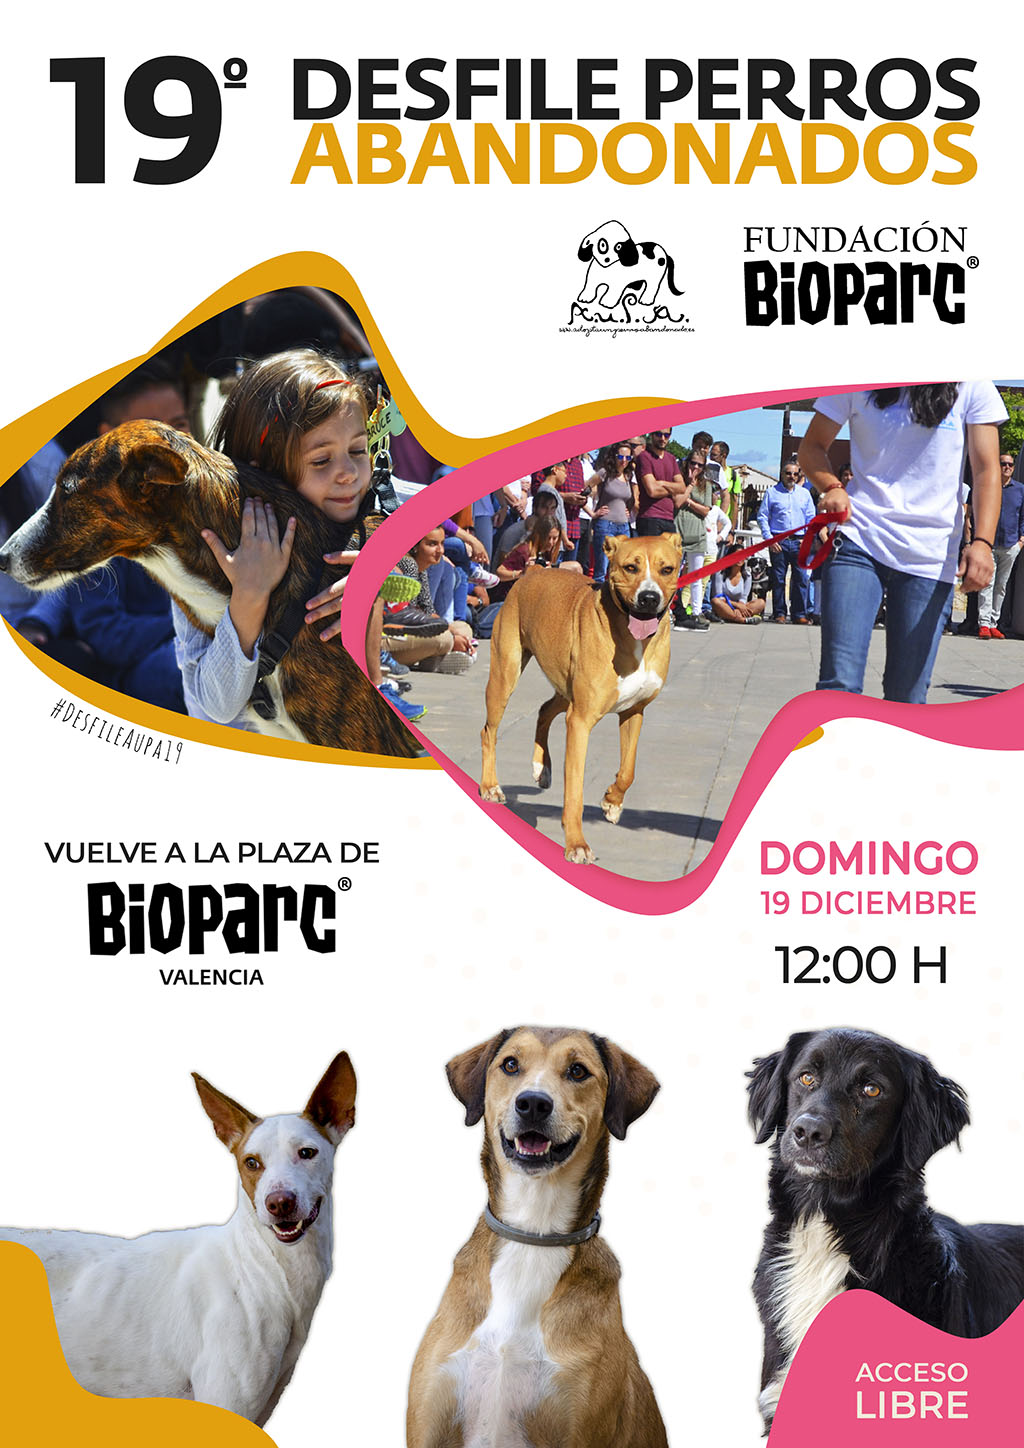 Vuelve a BIOPARC el Desfile para adoptar perros abandonados de AUPA